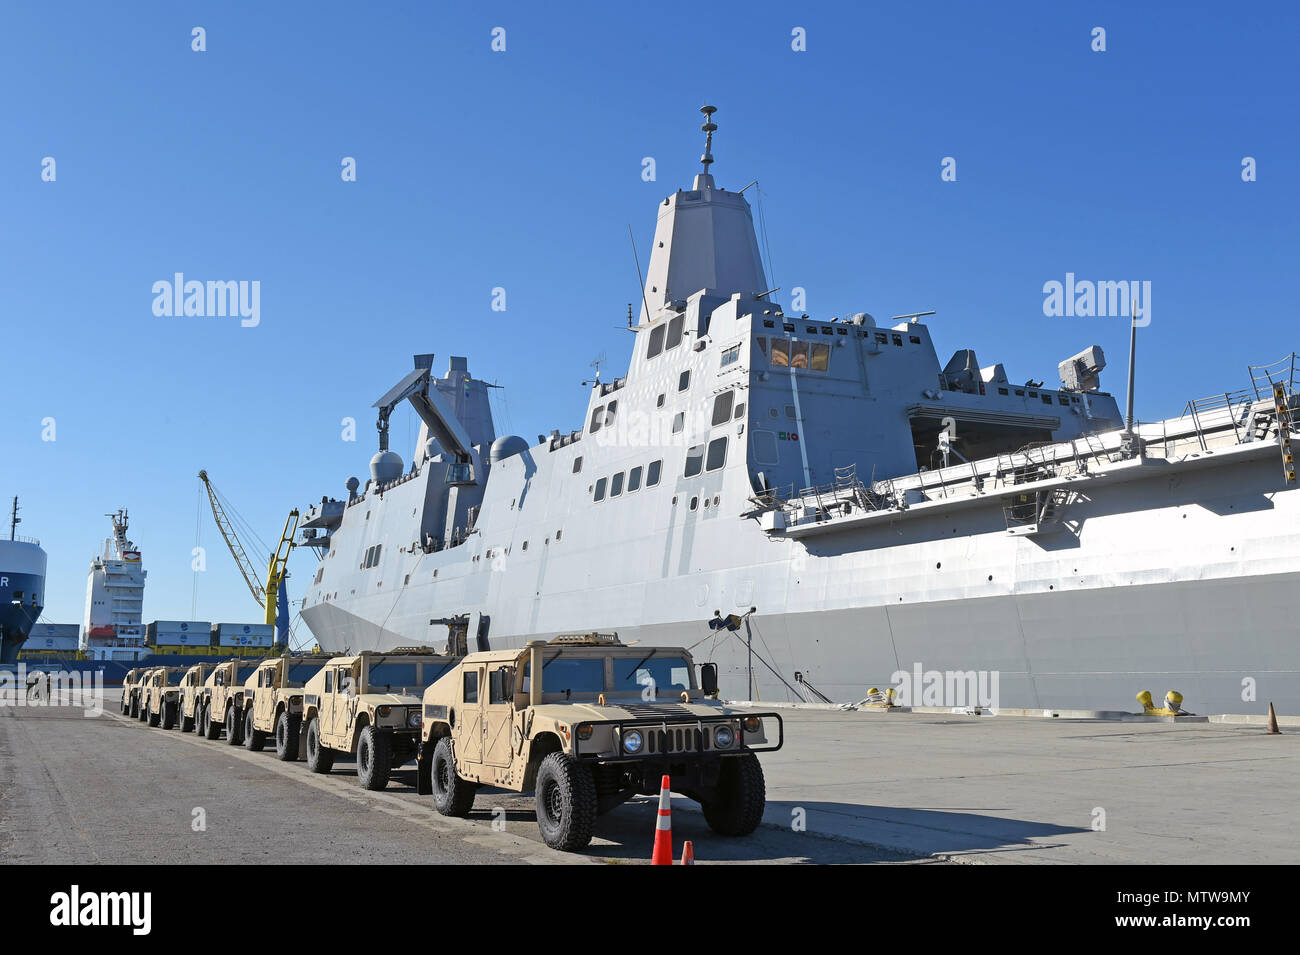 170126-N-DH124-210 PORT HUENEME, California (Gen. 26, 2017) - Seabees assegnato alla Naval Mobile Battaglione di costruzione (NMCB) 4 park otto humvees sulla base navale Ventura County Port Hueneme pier accanto al trasporto anfibio dock nave USS San Diego (LPD 22) dopo aver completato il caricamento di esercizio (LOADEX), 26 genn. Il LOADEX è progettato per la formazione di marinai con risposta rapida funzionalità per supportare gli sforzi di recupero e di assistere le autorità locali seguenti catastrofi naturali e provocate dall'uomo. (U.S. Foto di Marina di Massa lo specialista di comunicazione 1a classe Rosalie Chang/rilasciato) Foto Stock